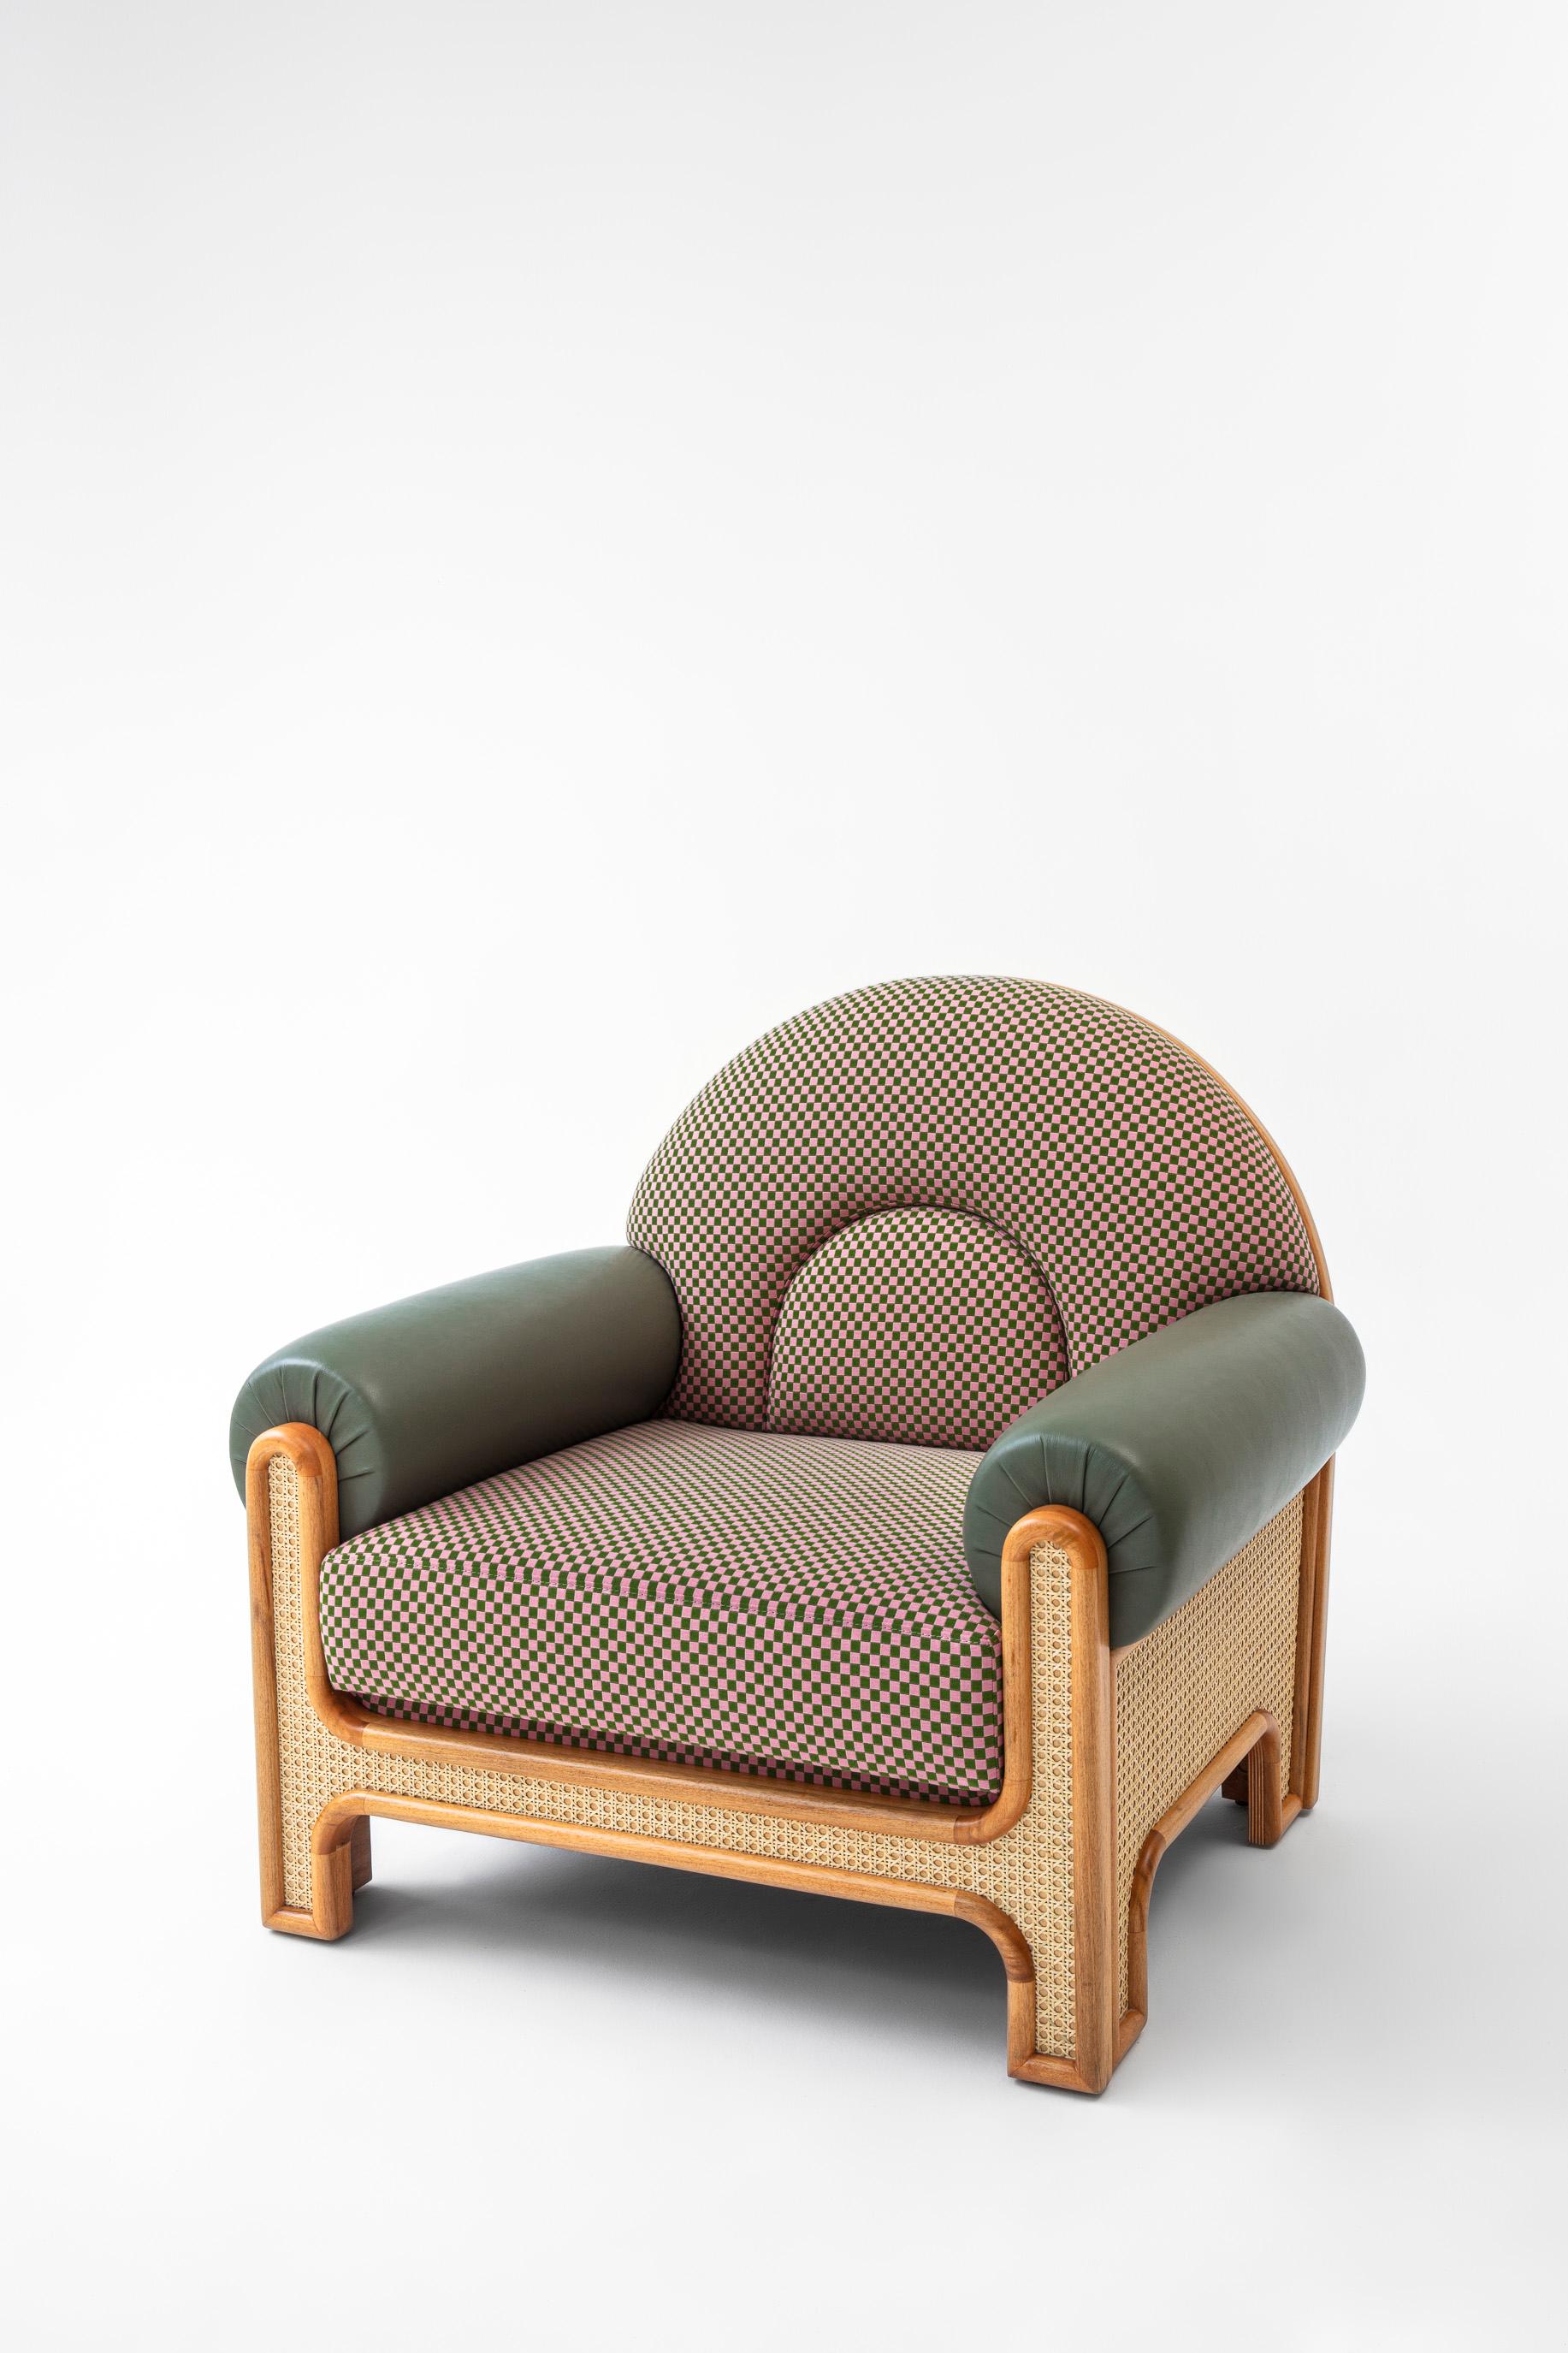 Le fauteuil N-gene est une réinterprétation d'un fauteuil conçu par l'oncle de Merve, l'architecte d'intérieur Engin, dans les années 1970. Le N-Gene est revisité avec des cannes, et est garni d'un textile à carreaux avec des accoudoirs en cuir